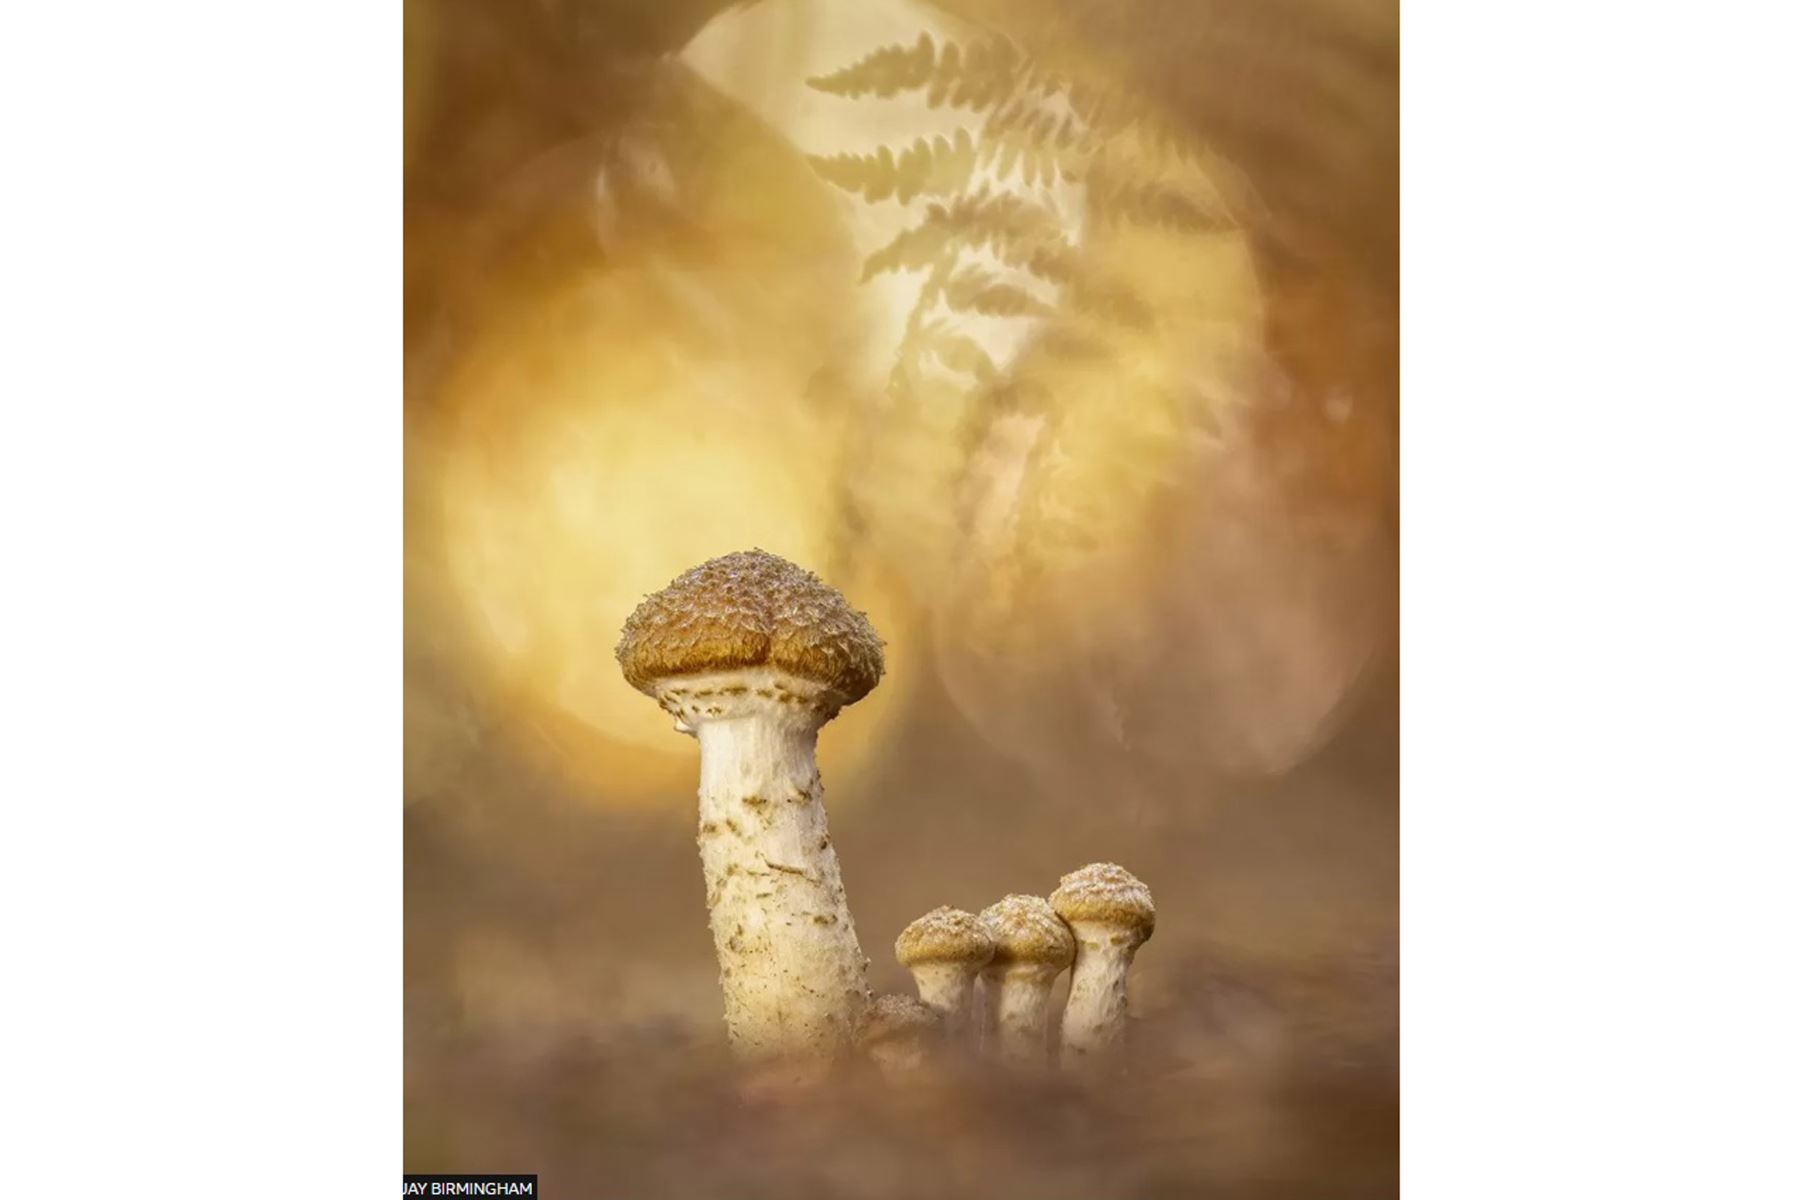 La categoría World of Fungi fue otorgada a Jay Birmingham por su fotografía titulada Autumn Emergence, que fue tomada en Monks Park Wood, Warwickshire.
Foto:Jay Birmingham